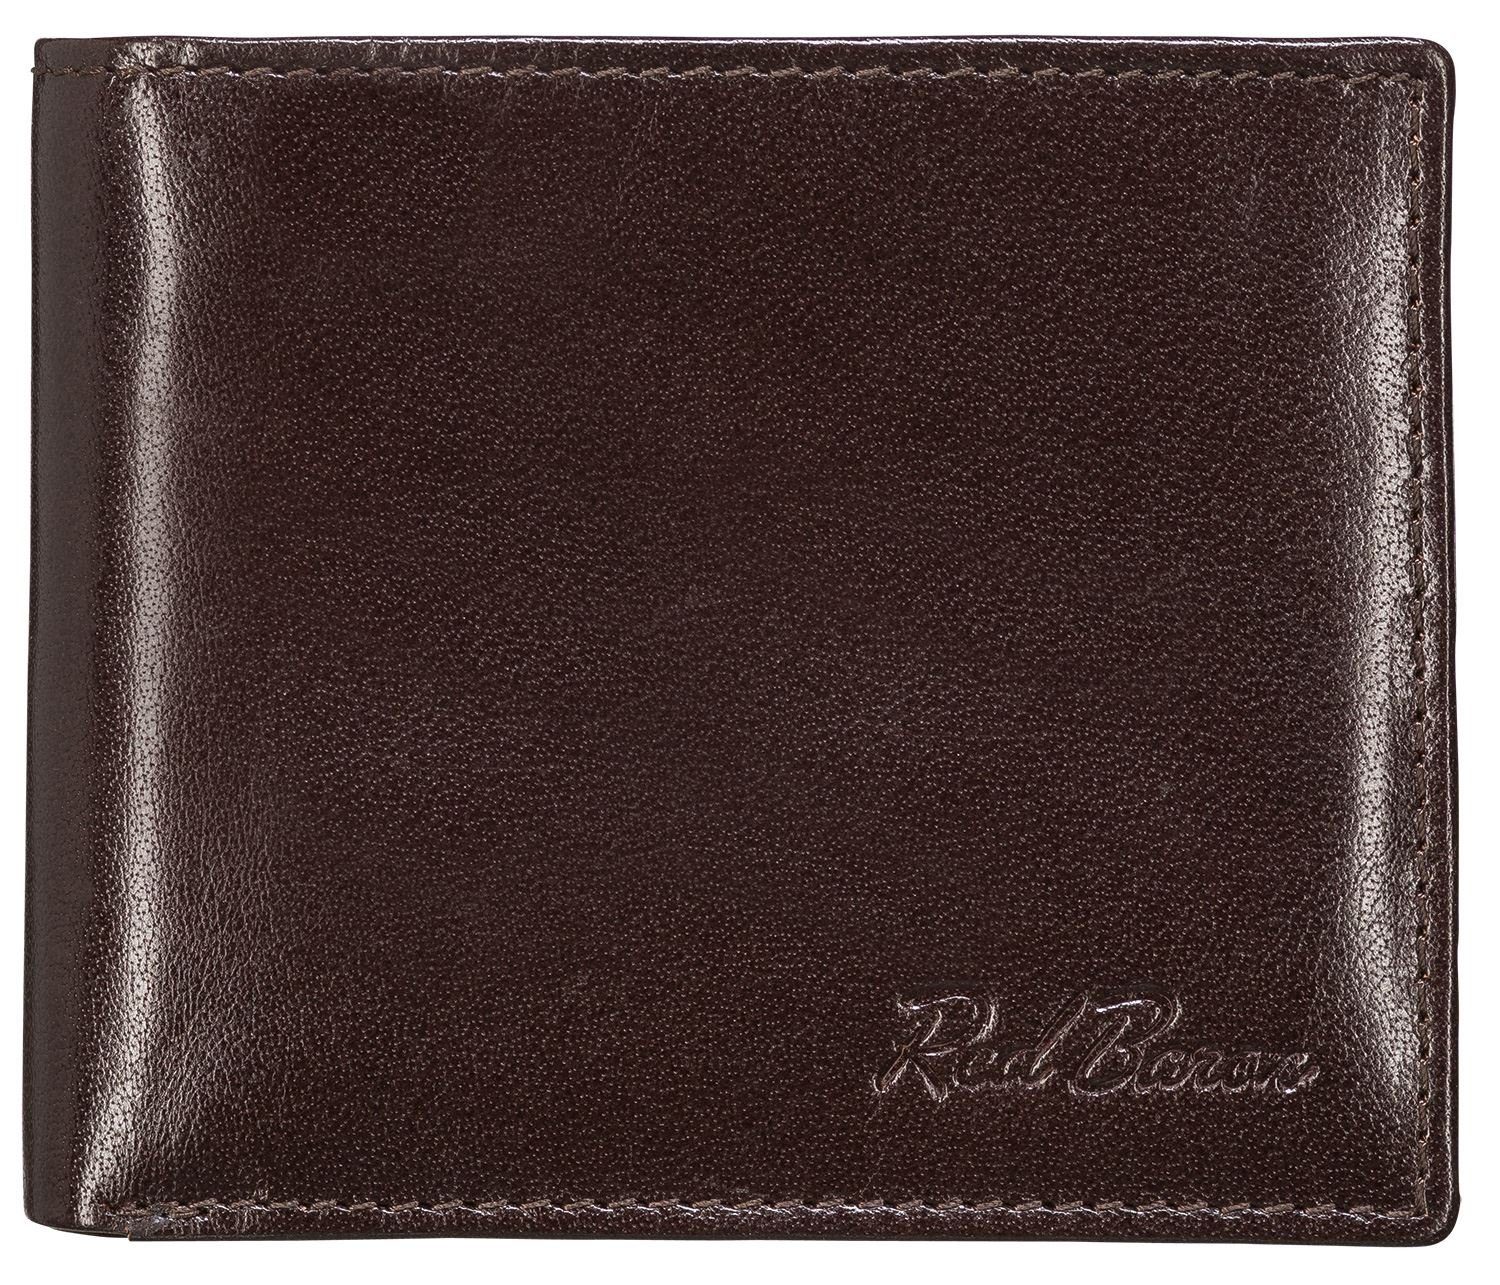 Damen Alle Damentaschen Red Baron Geldbörse RB-WT-006-04, Kreditkartenfächer, Netzfach, Münzfach mit Druckknopf, Einkaufswagench